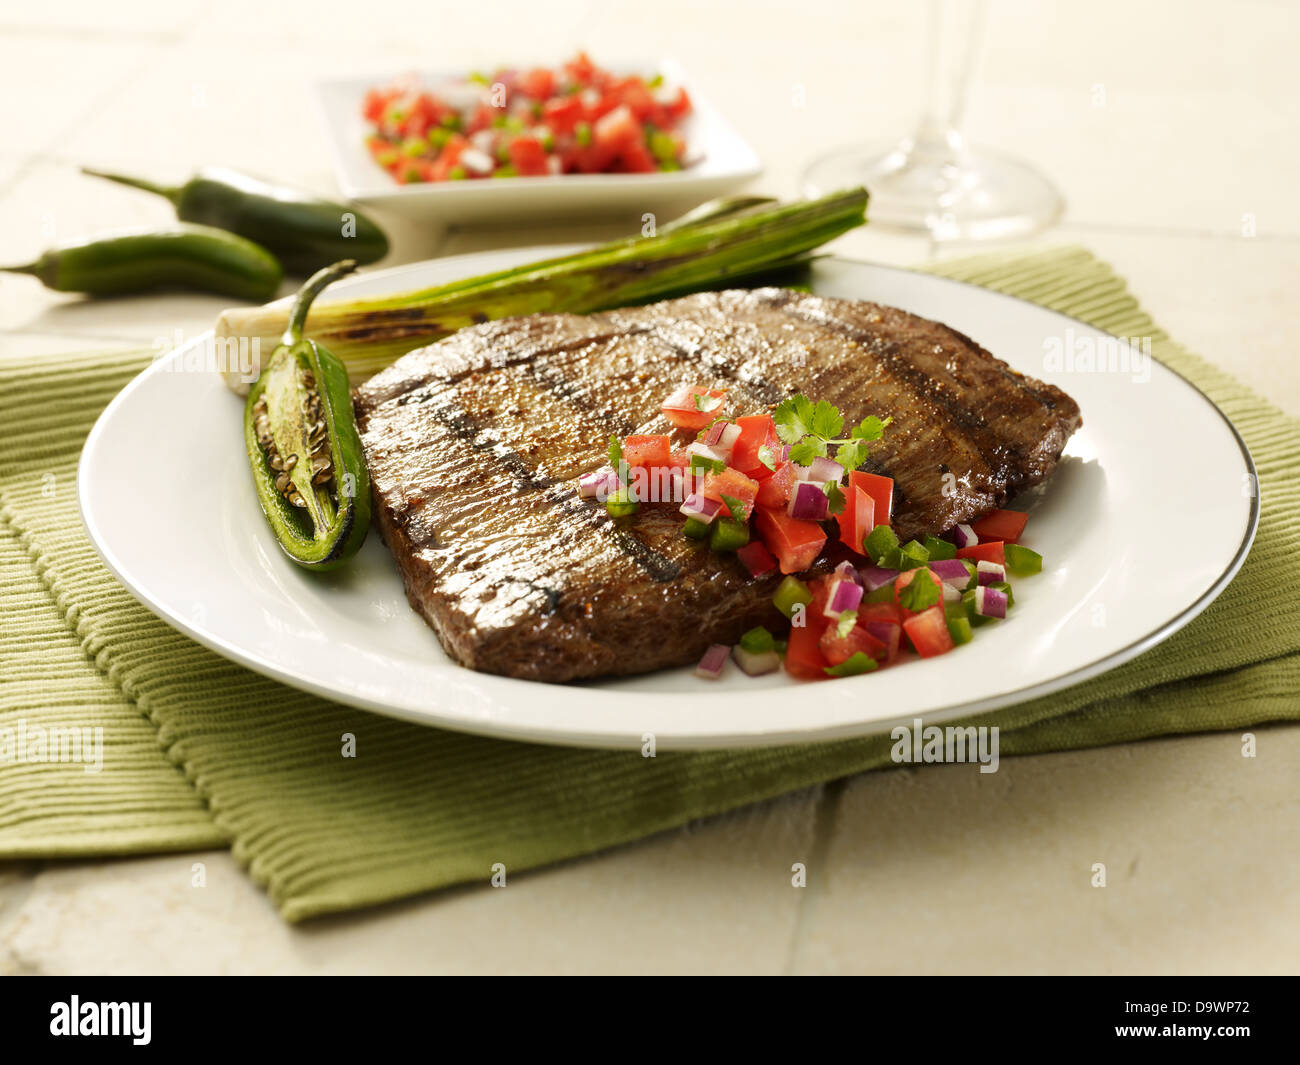 flank steak in scene Stock Photo